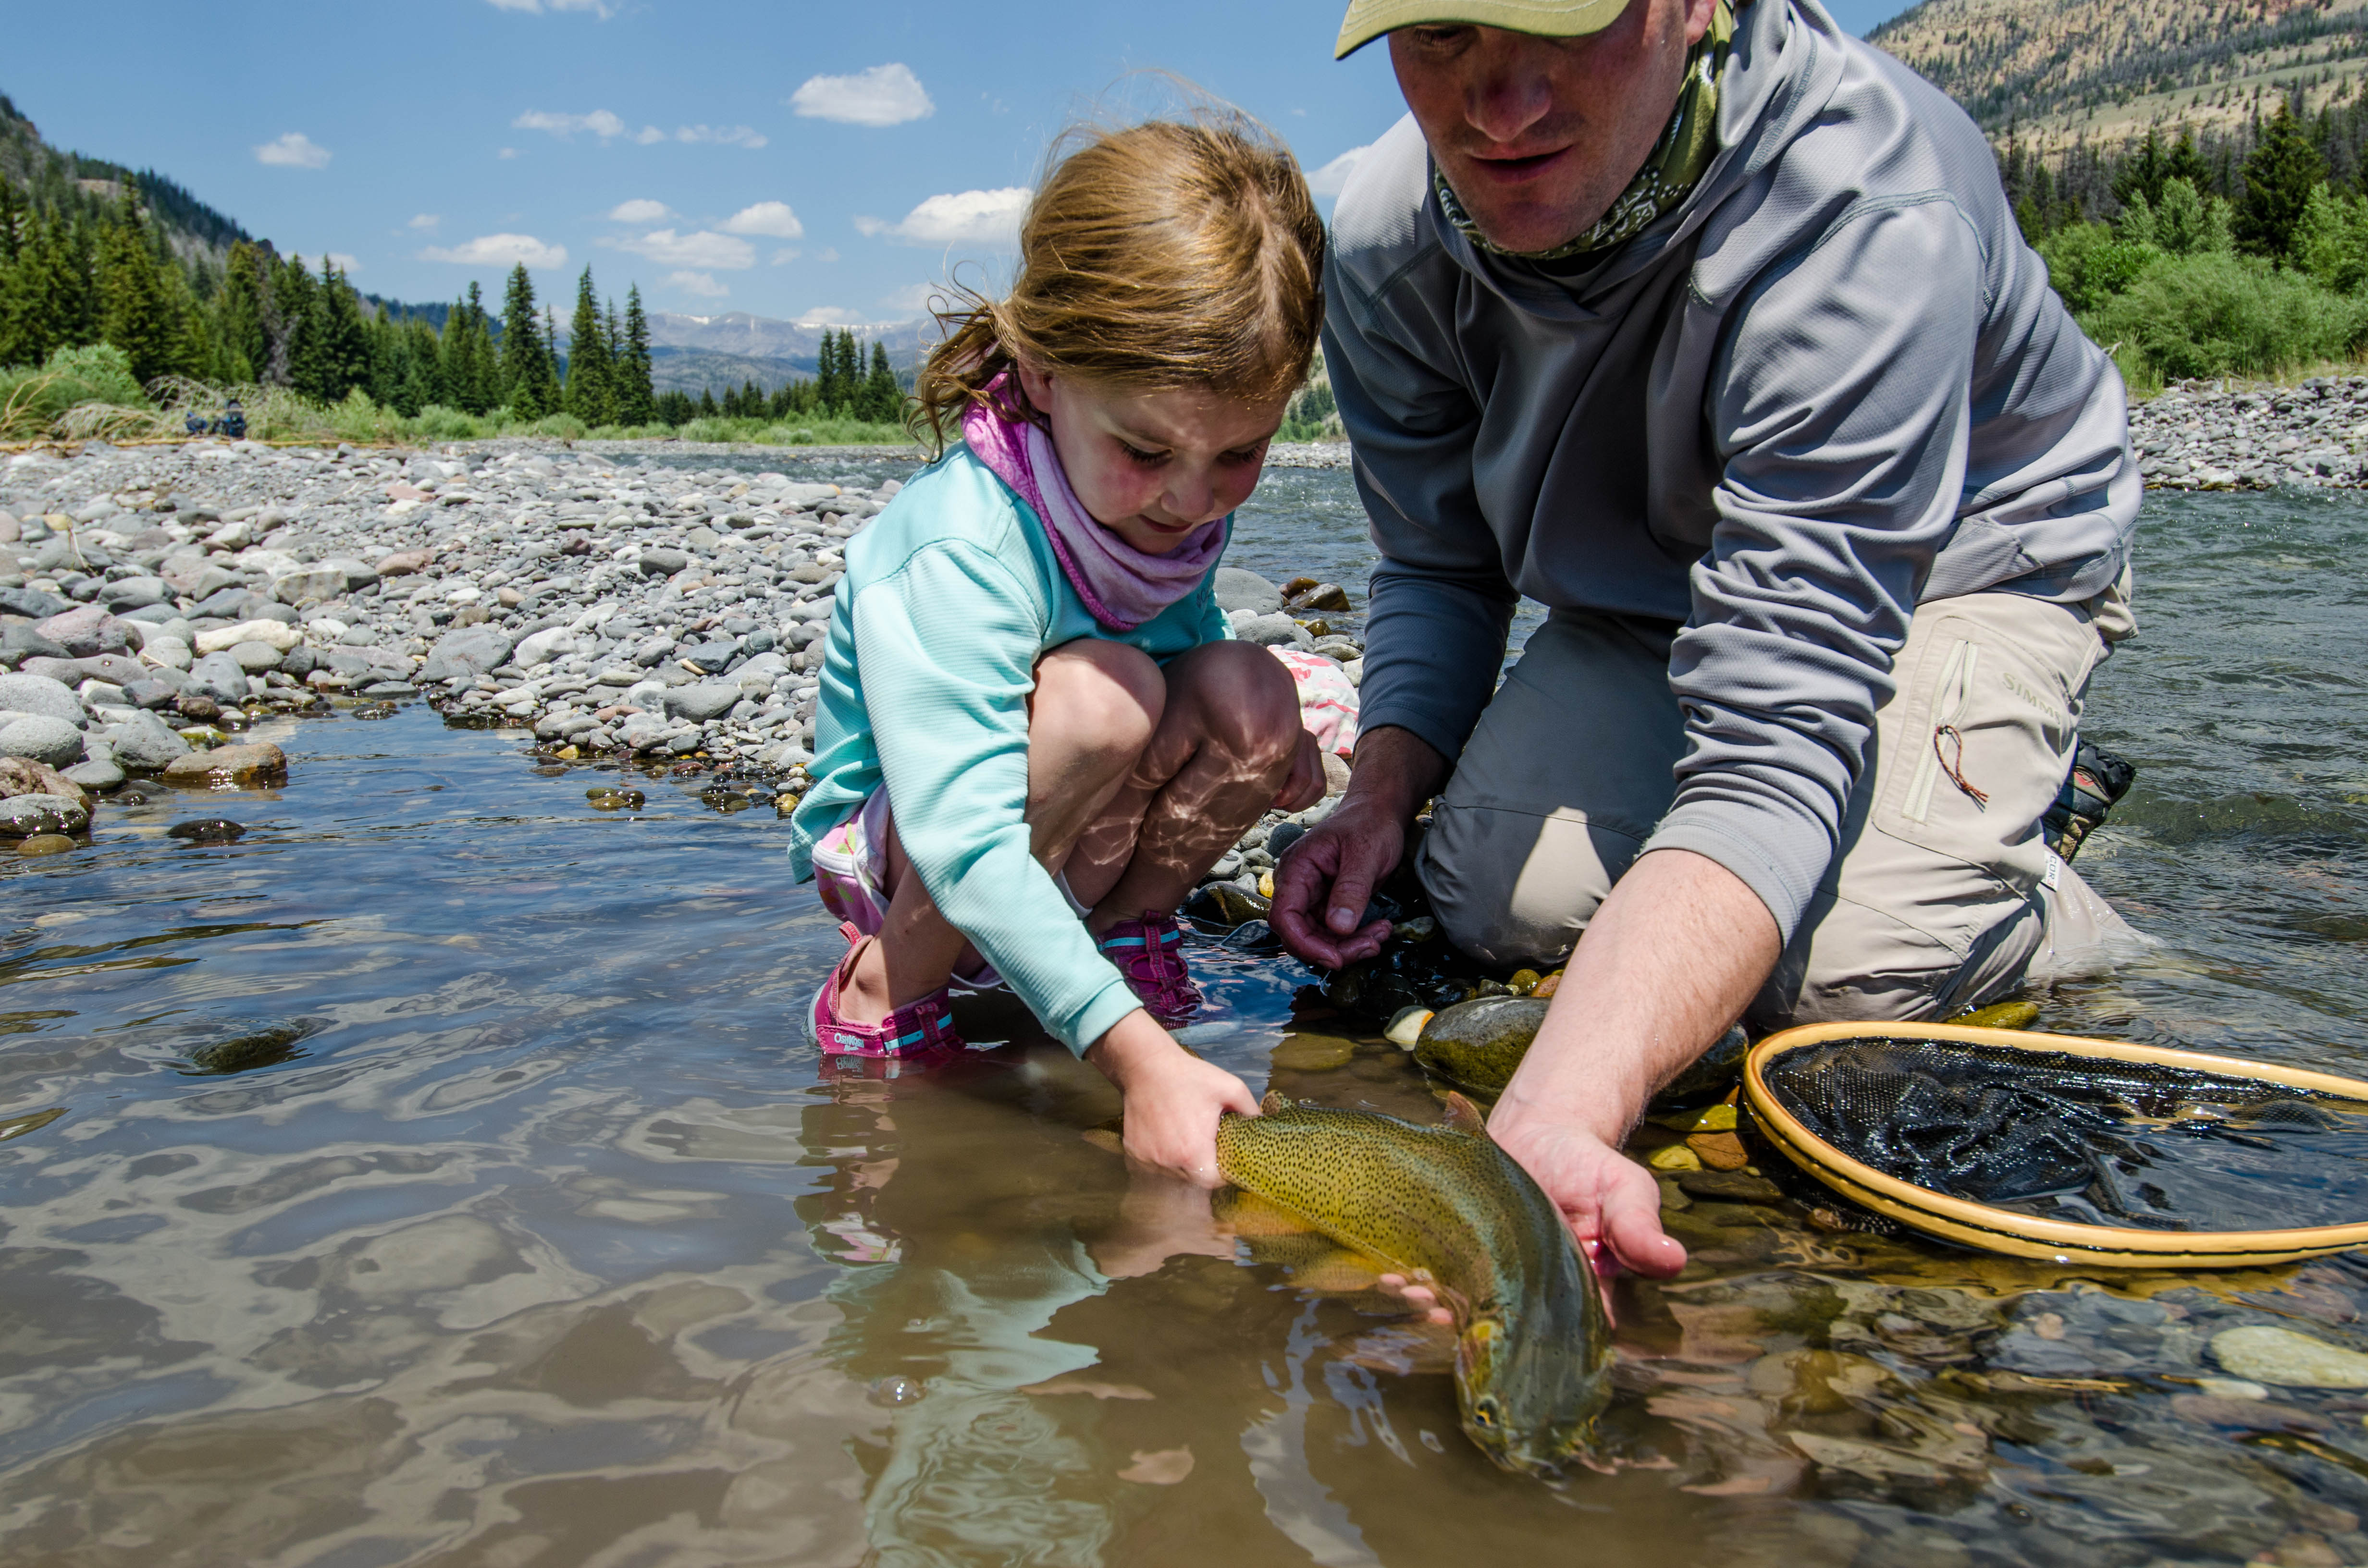 Menancang ikan mengajarkan anak tentang konservasi alam